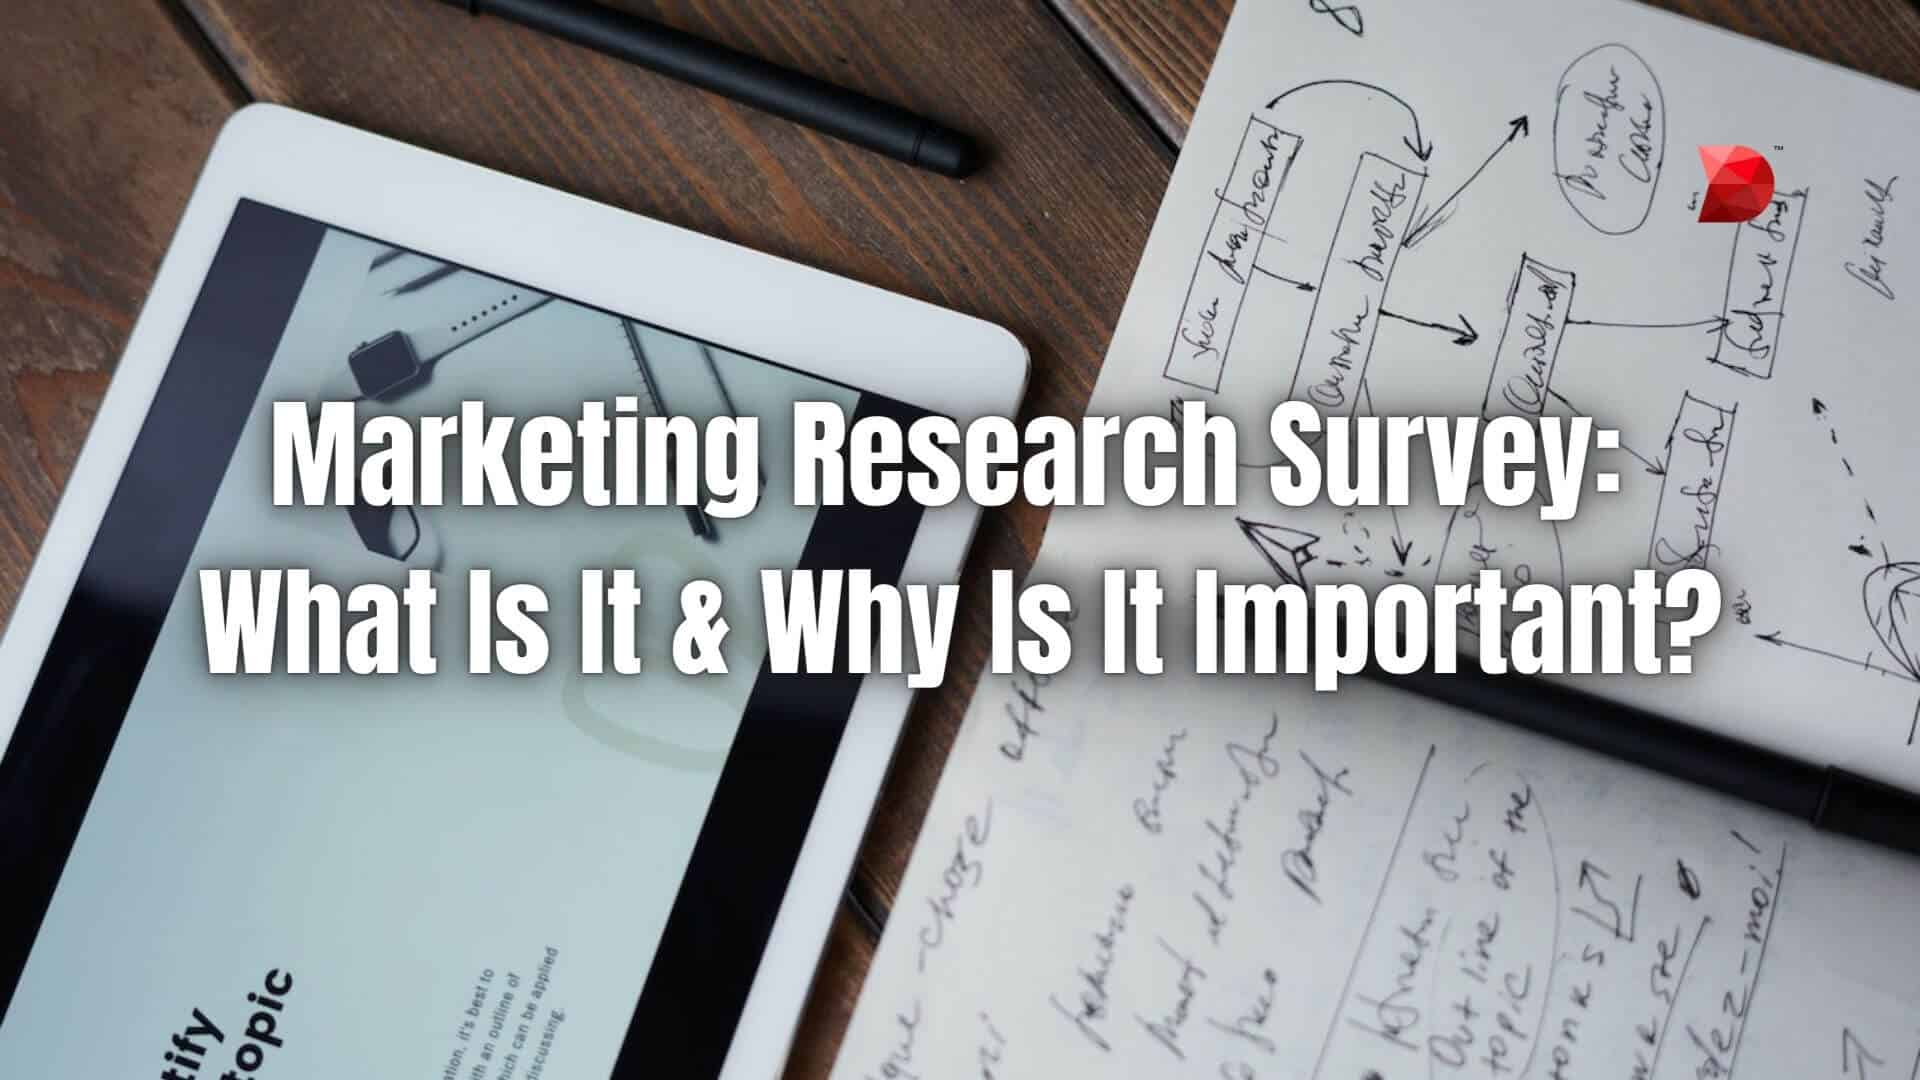 market research survey